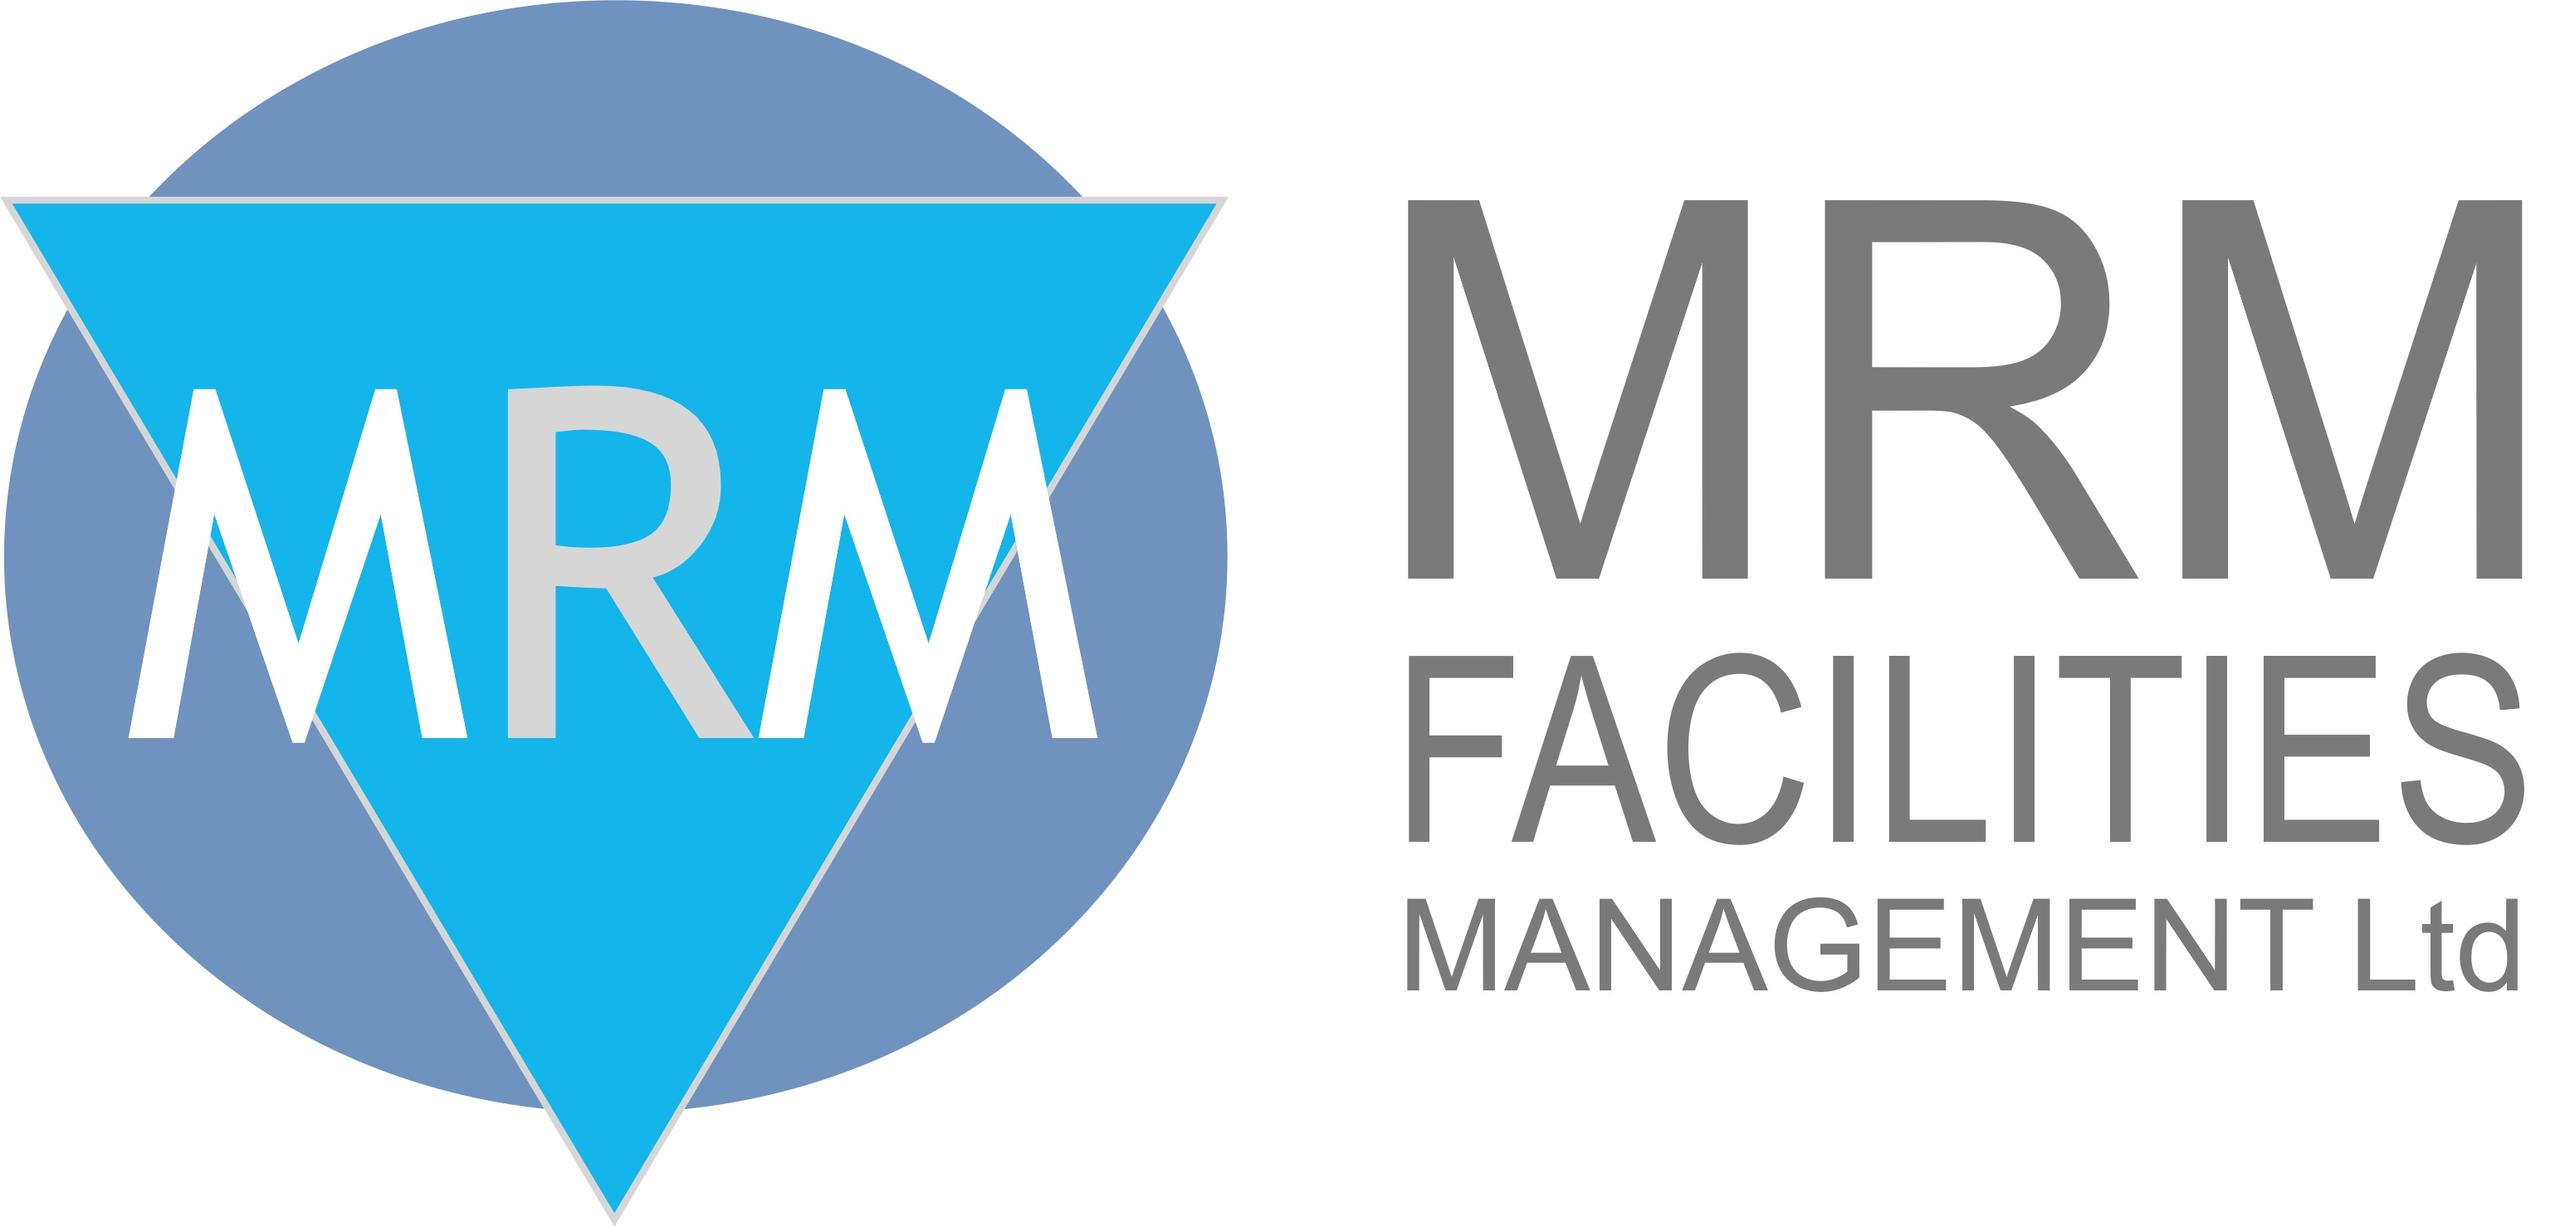 MRM Facilities Management Ltd